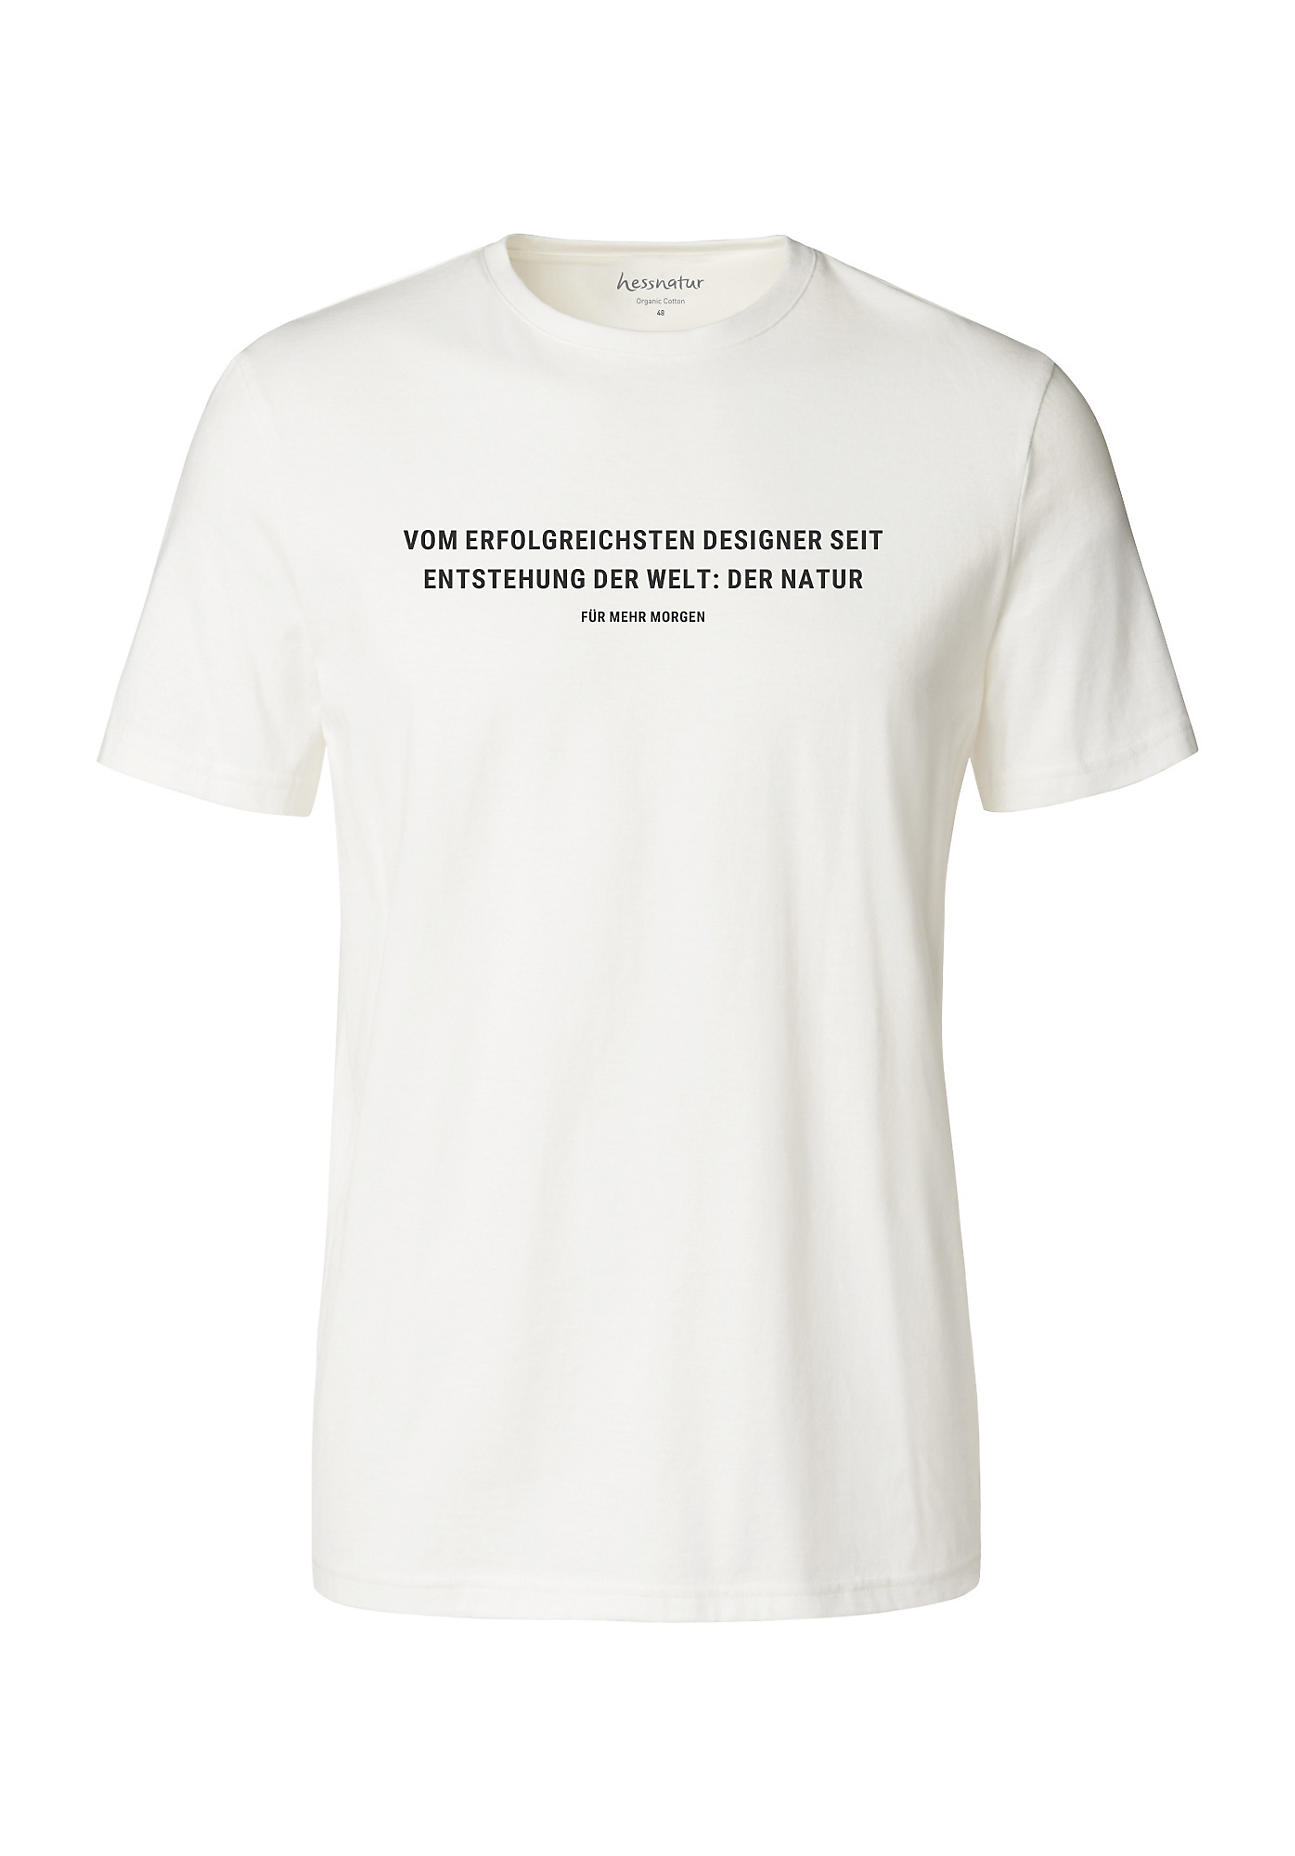 hessnatur Herren Statement Shirt aus Bio-Baumwolle - weiß Grösse56 von hessnatur